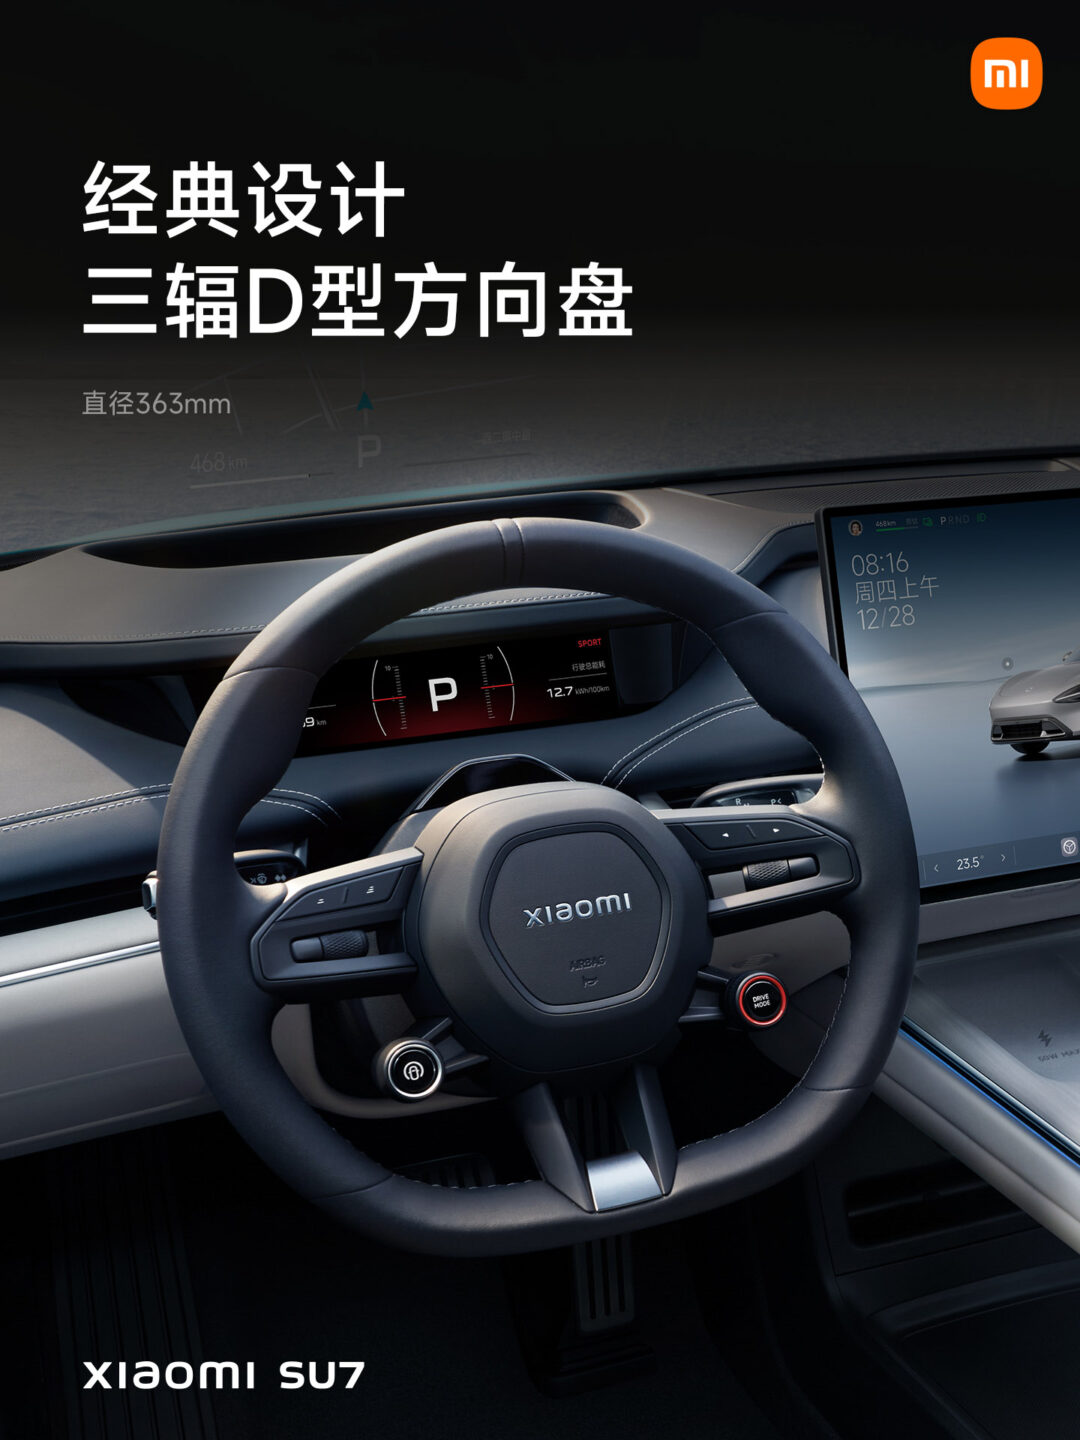 El Xiaomi SUV 7 se presentará el 28 de diciembre: todo lo que debes saber